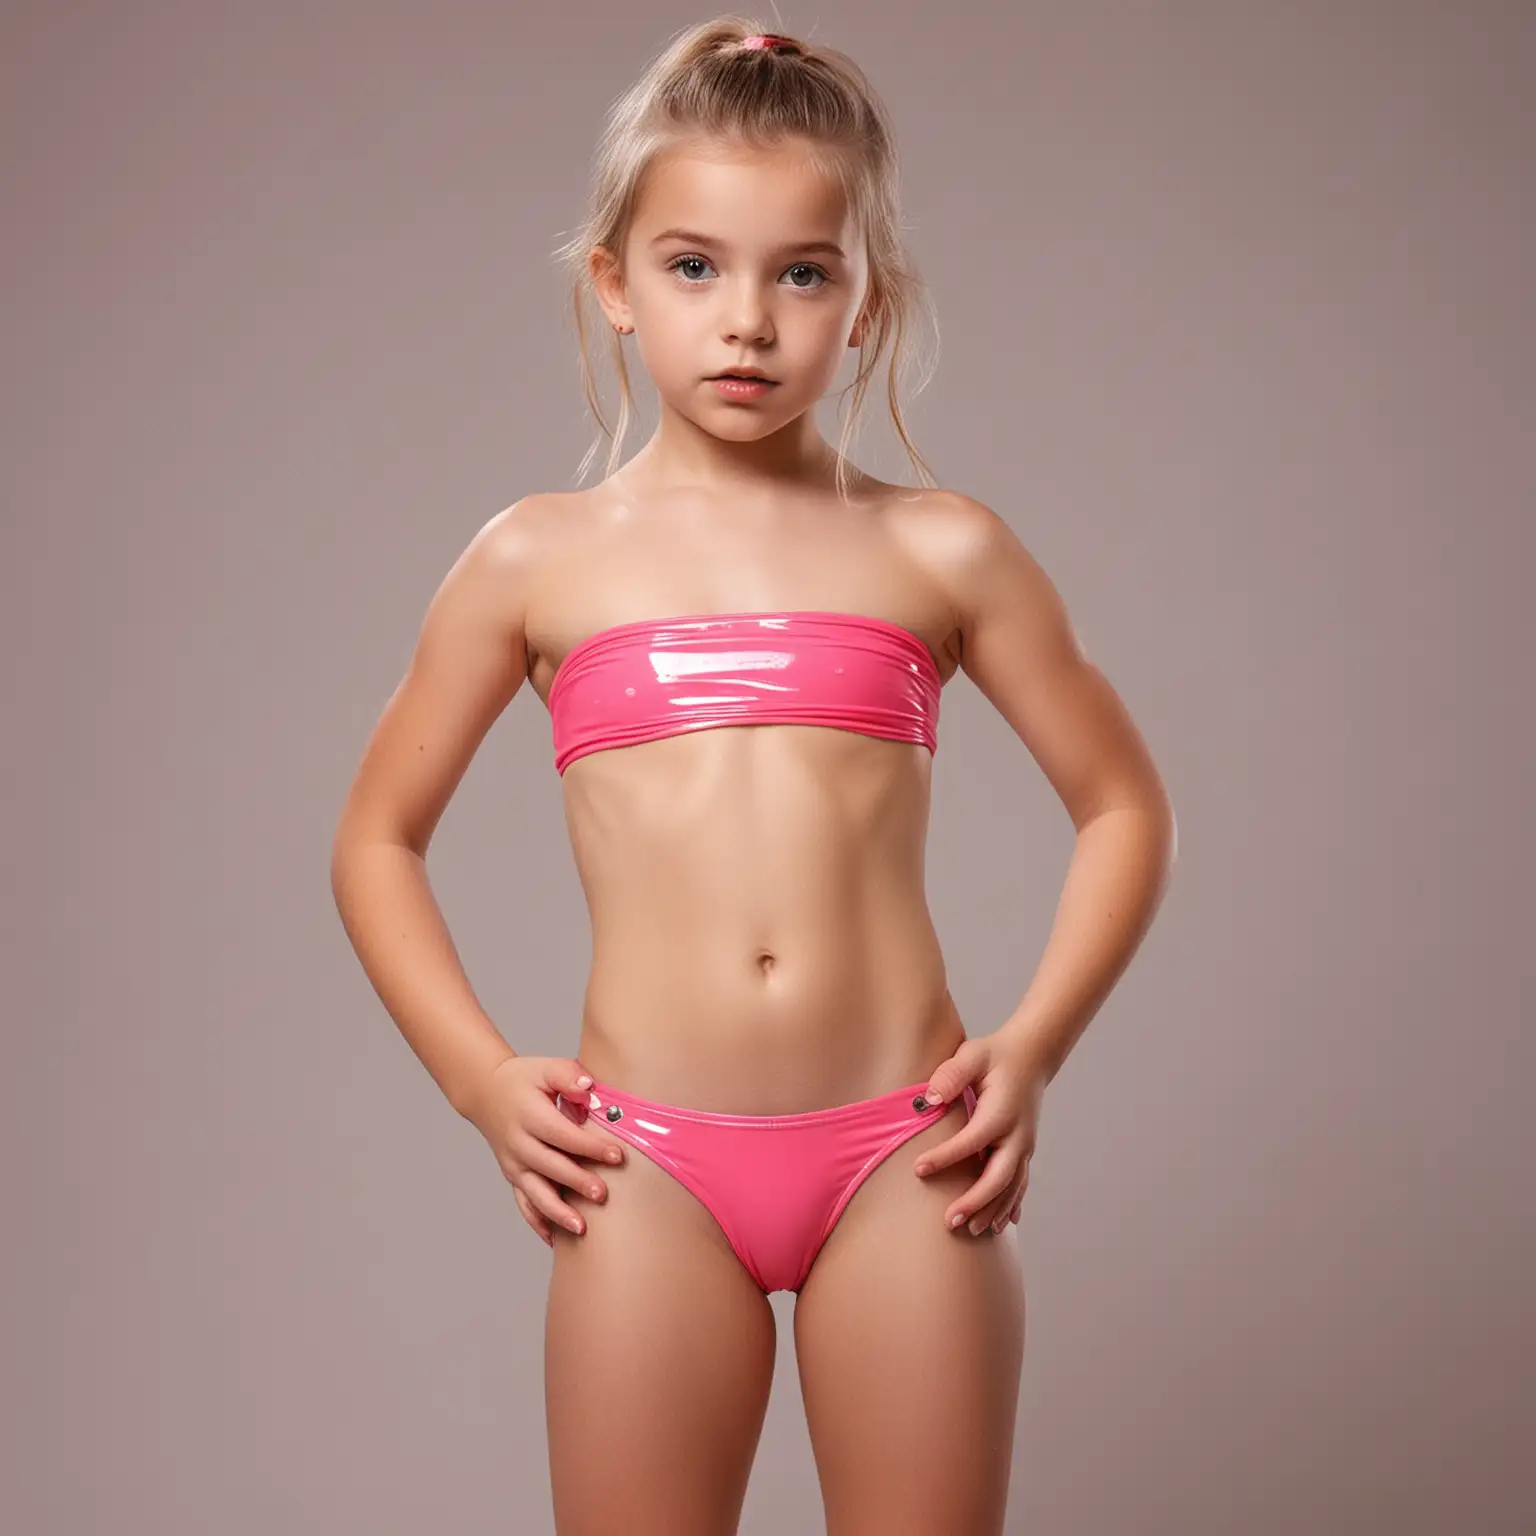 Young-Model-in-Plastic-Mini-Bikini-and-UnderBoob-Crop-Top